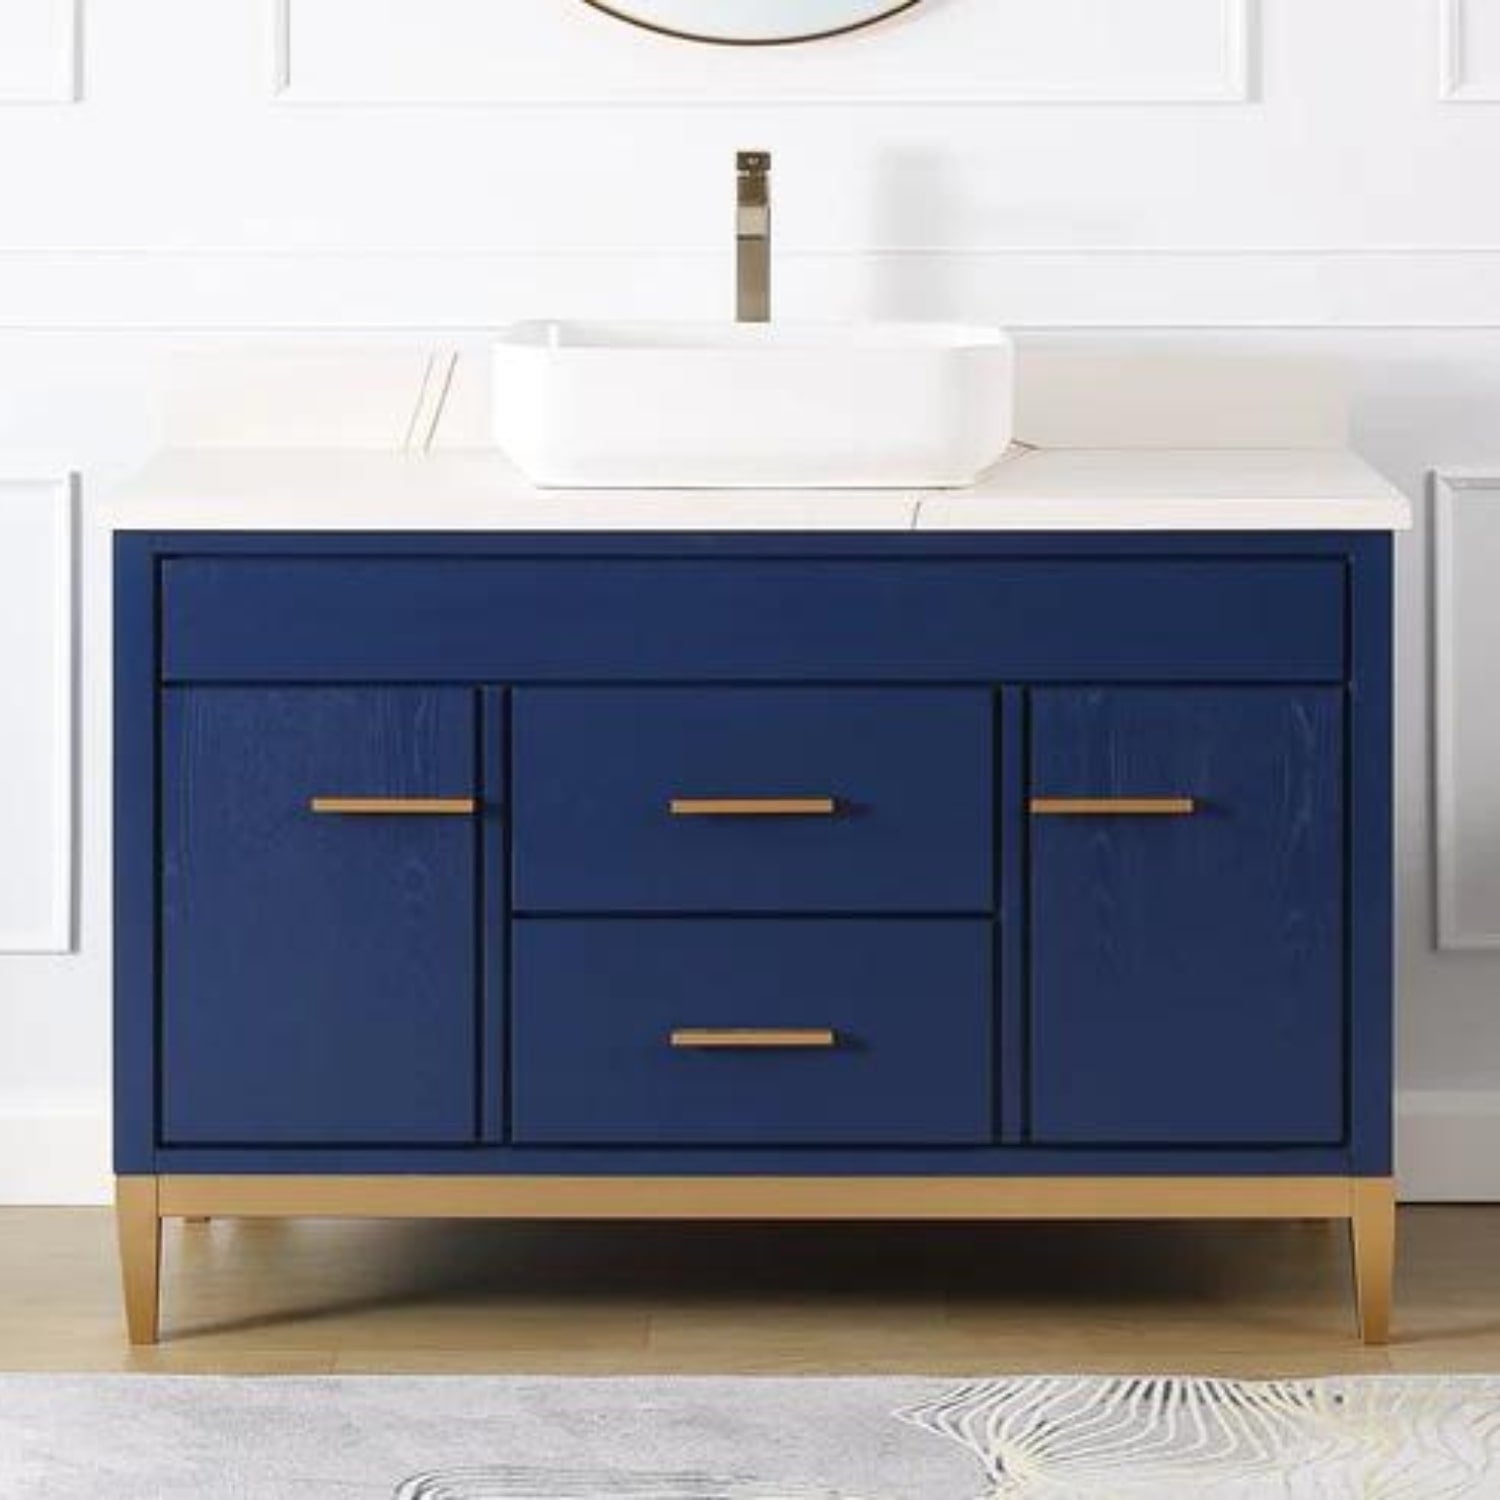 Beatrice 48" Navy Blue Bathroom Vanity with White Quartz Top - Contemporary Bathroom Vanity